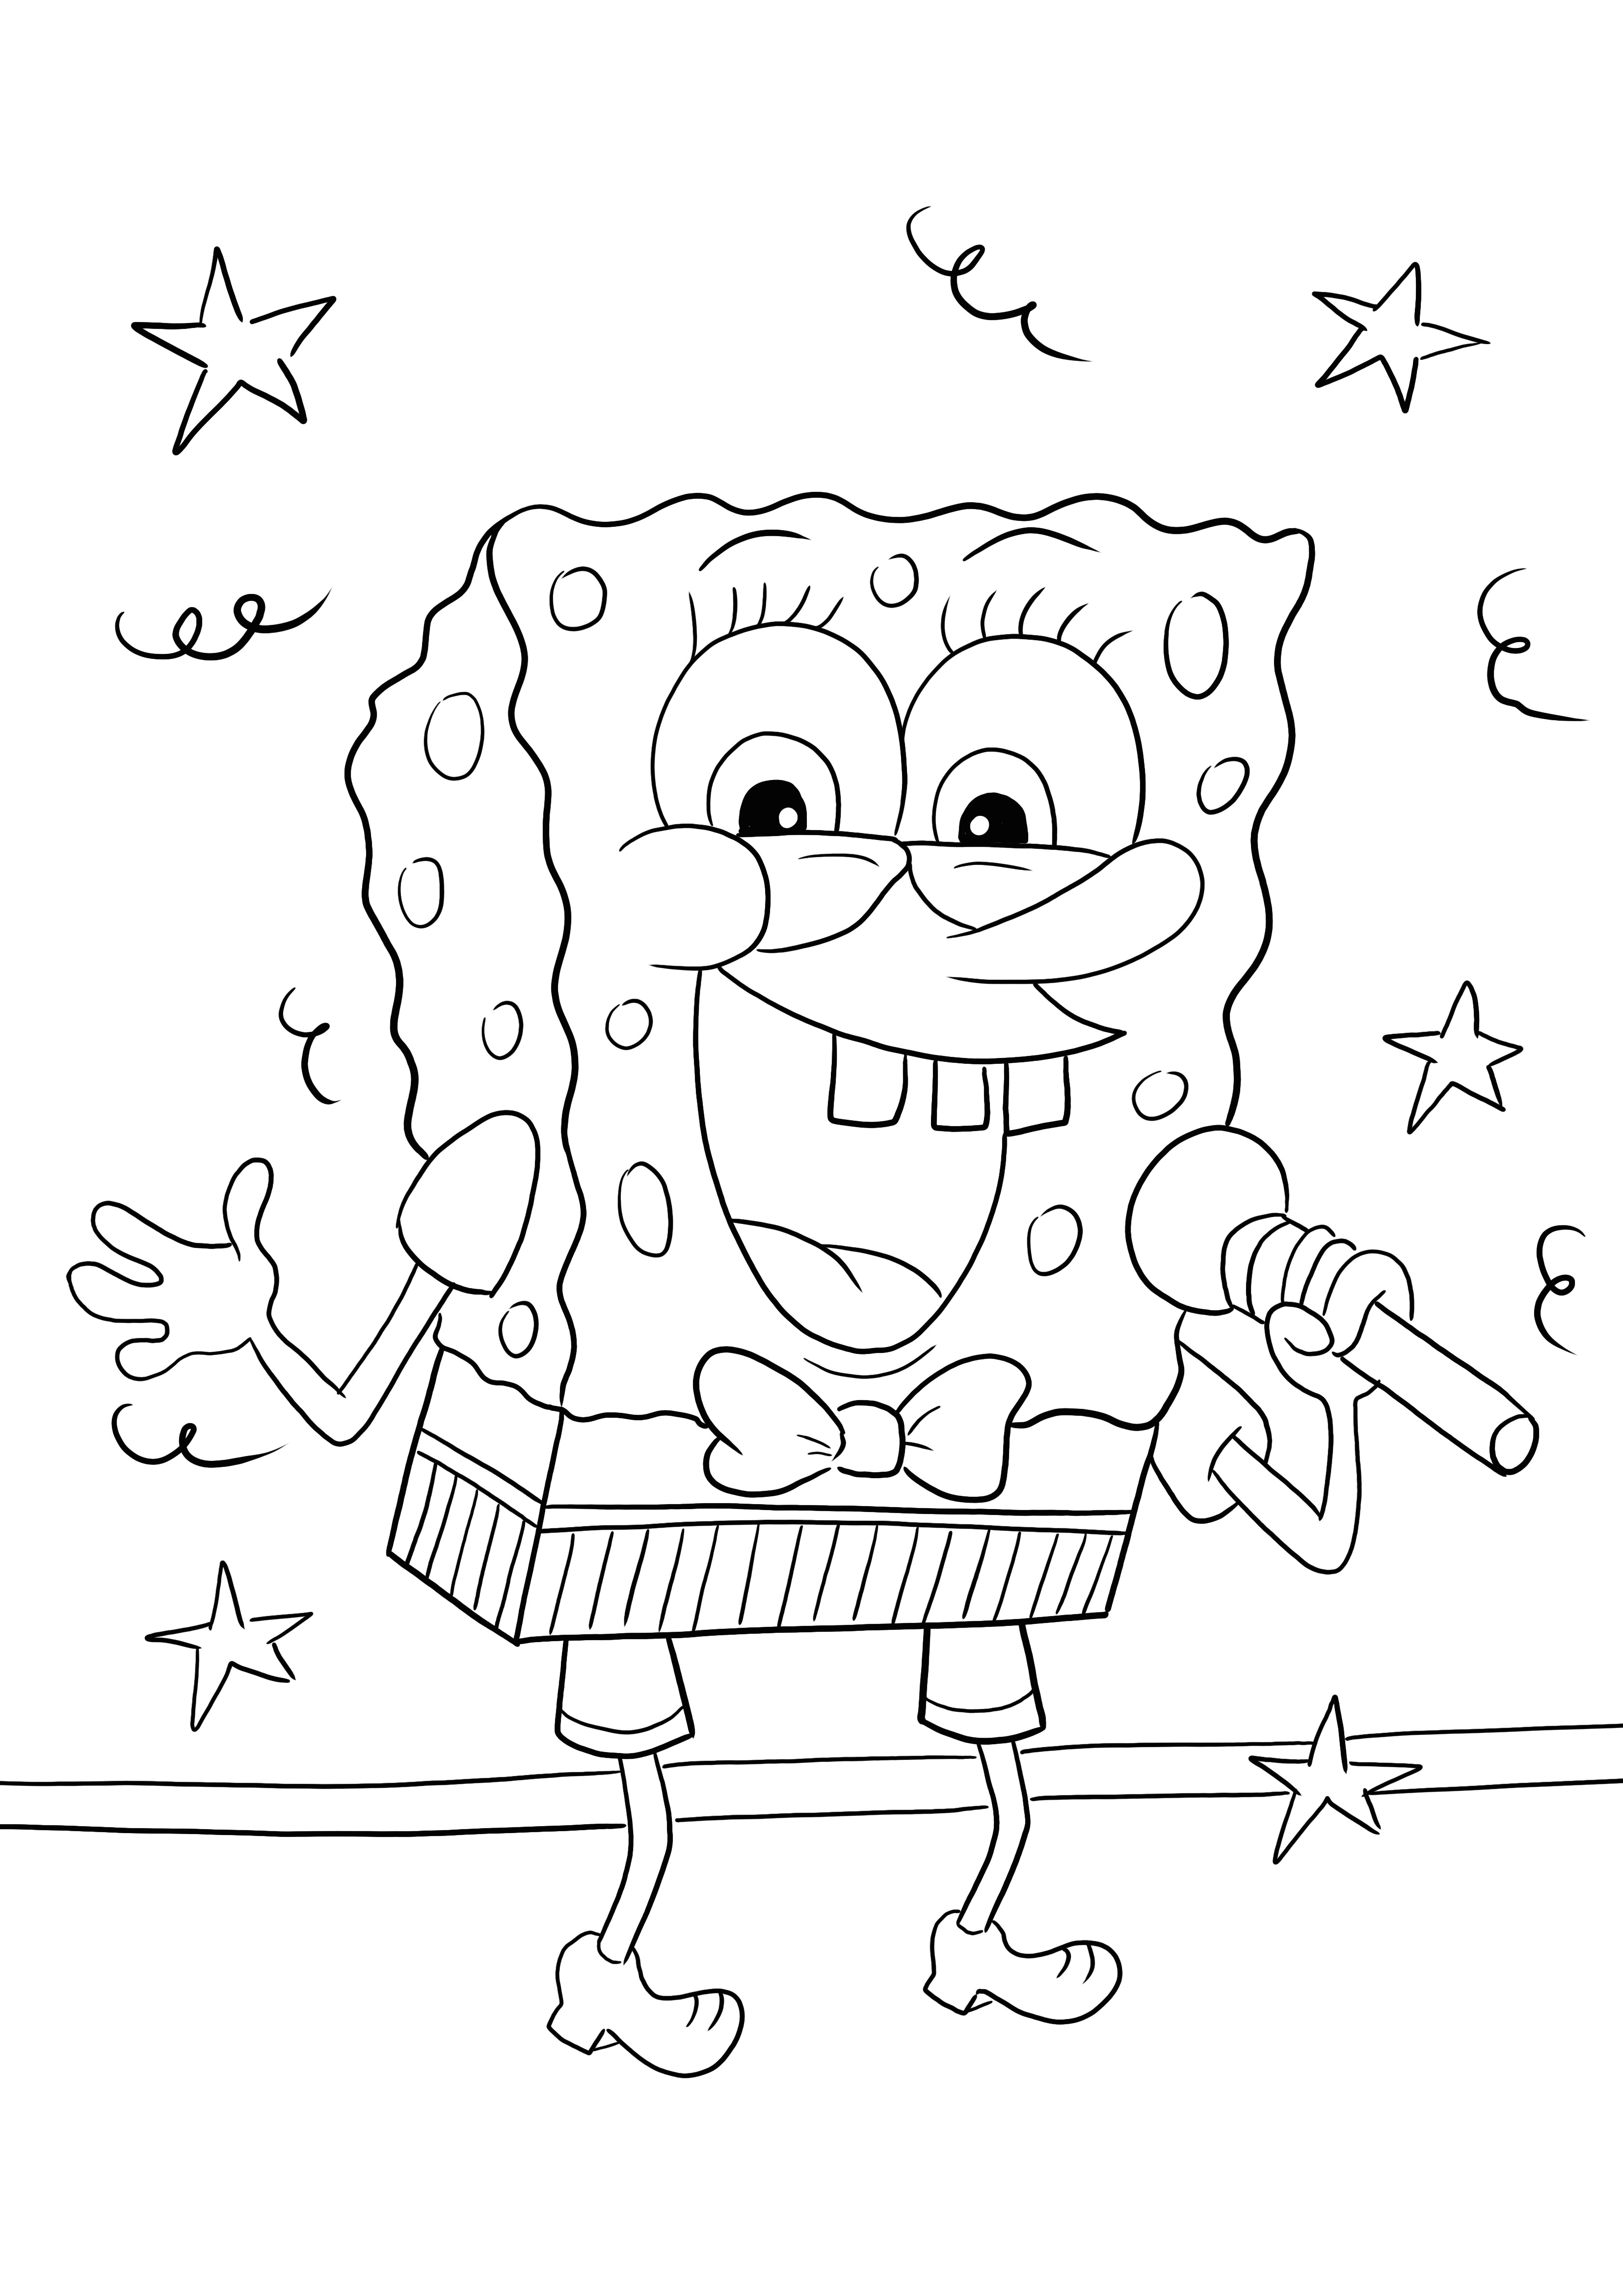 Sponge Bob laulaa mikrofonittomalla värityksellä ja painatuksella huvin vuoksi